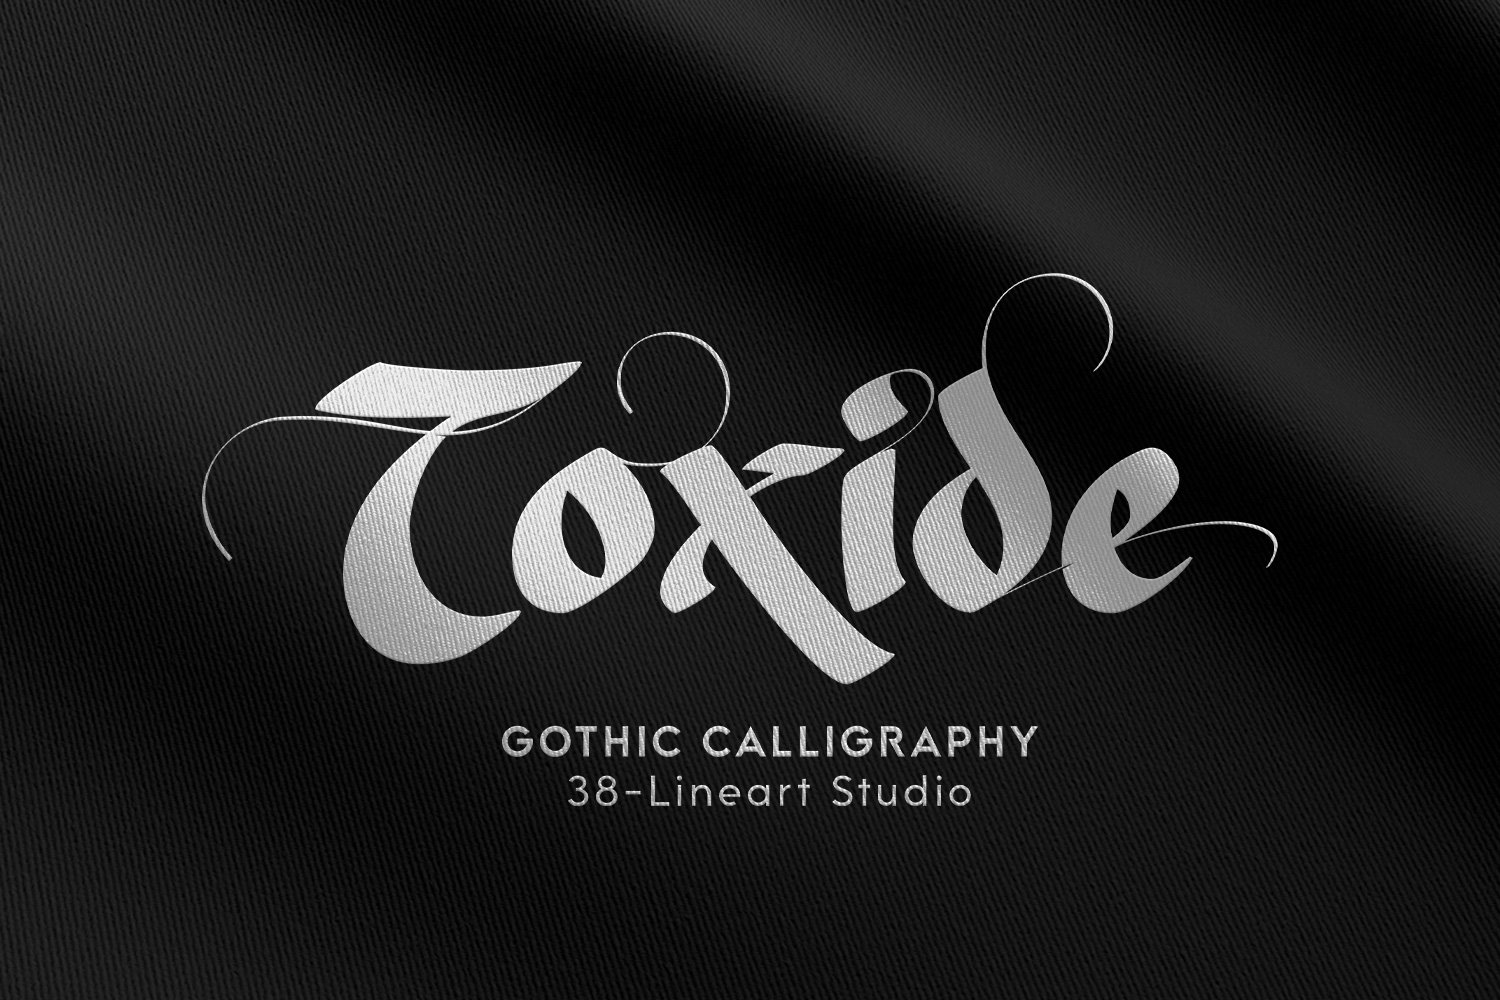 Toxide-Blackletter cover image.